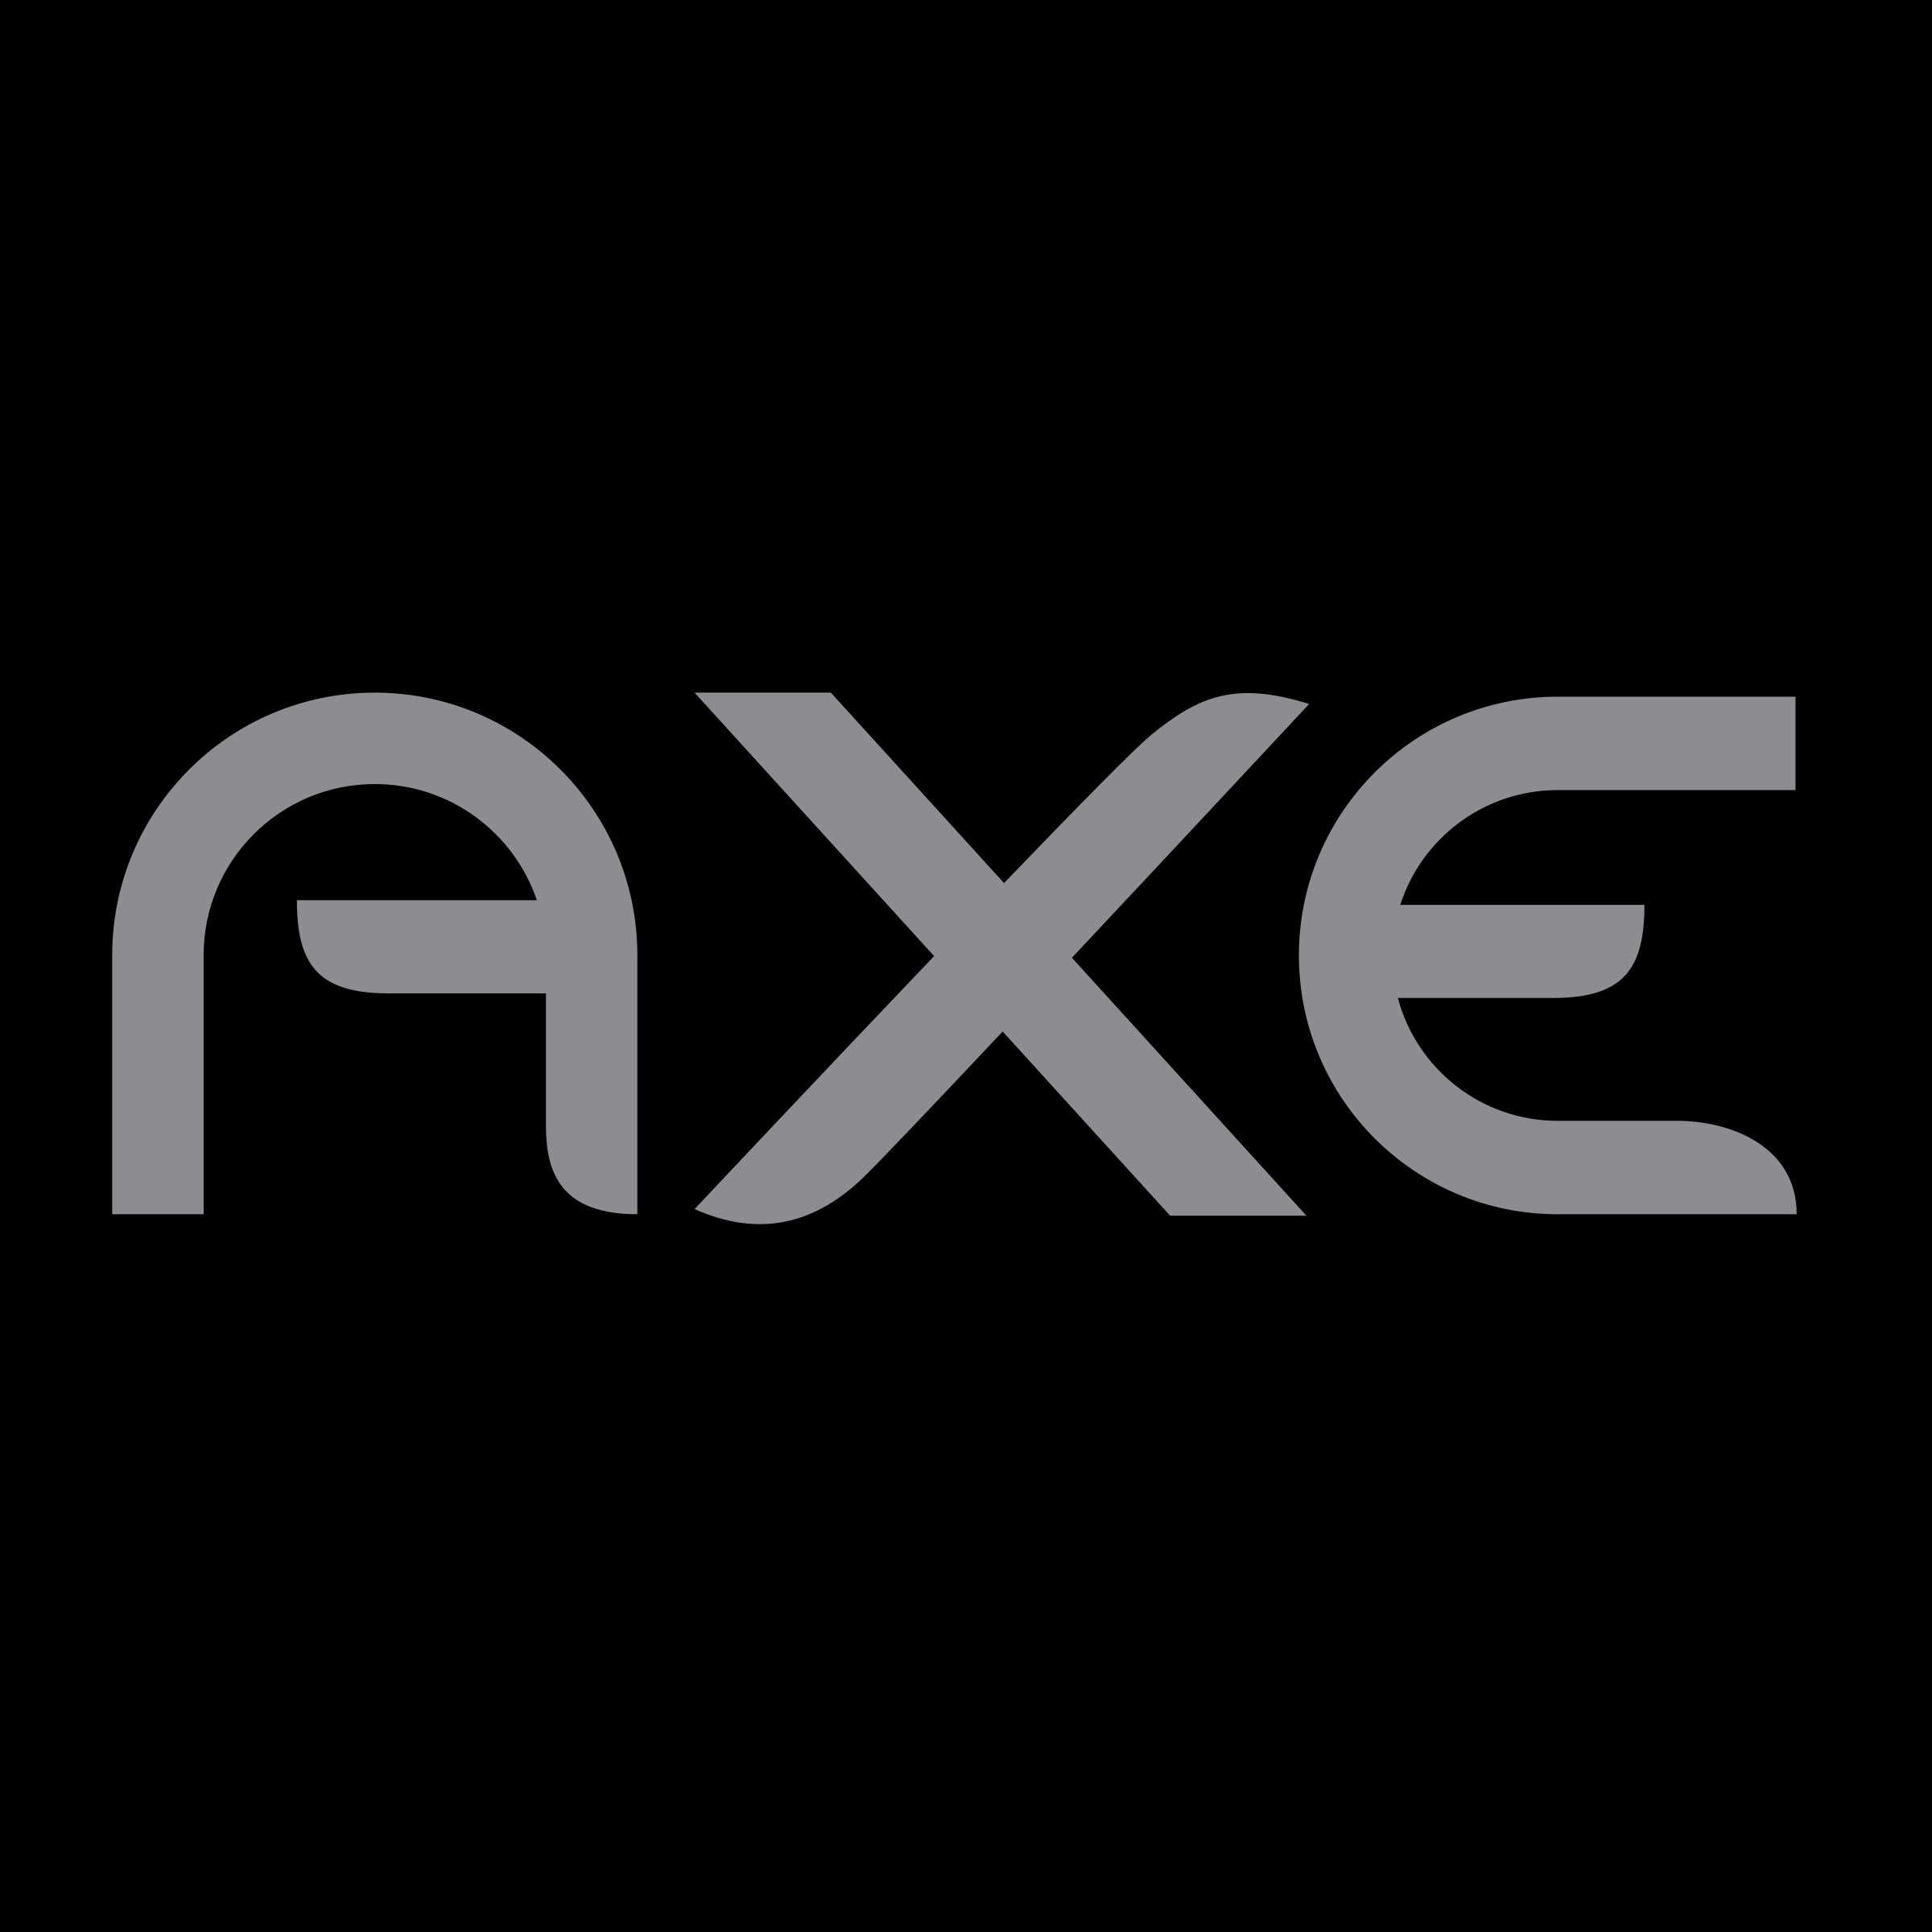 Axe Logo - Axe 01 Logo PNG Transparent & SVG Vector